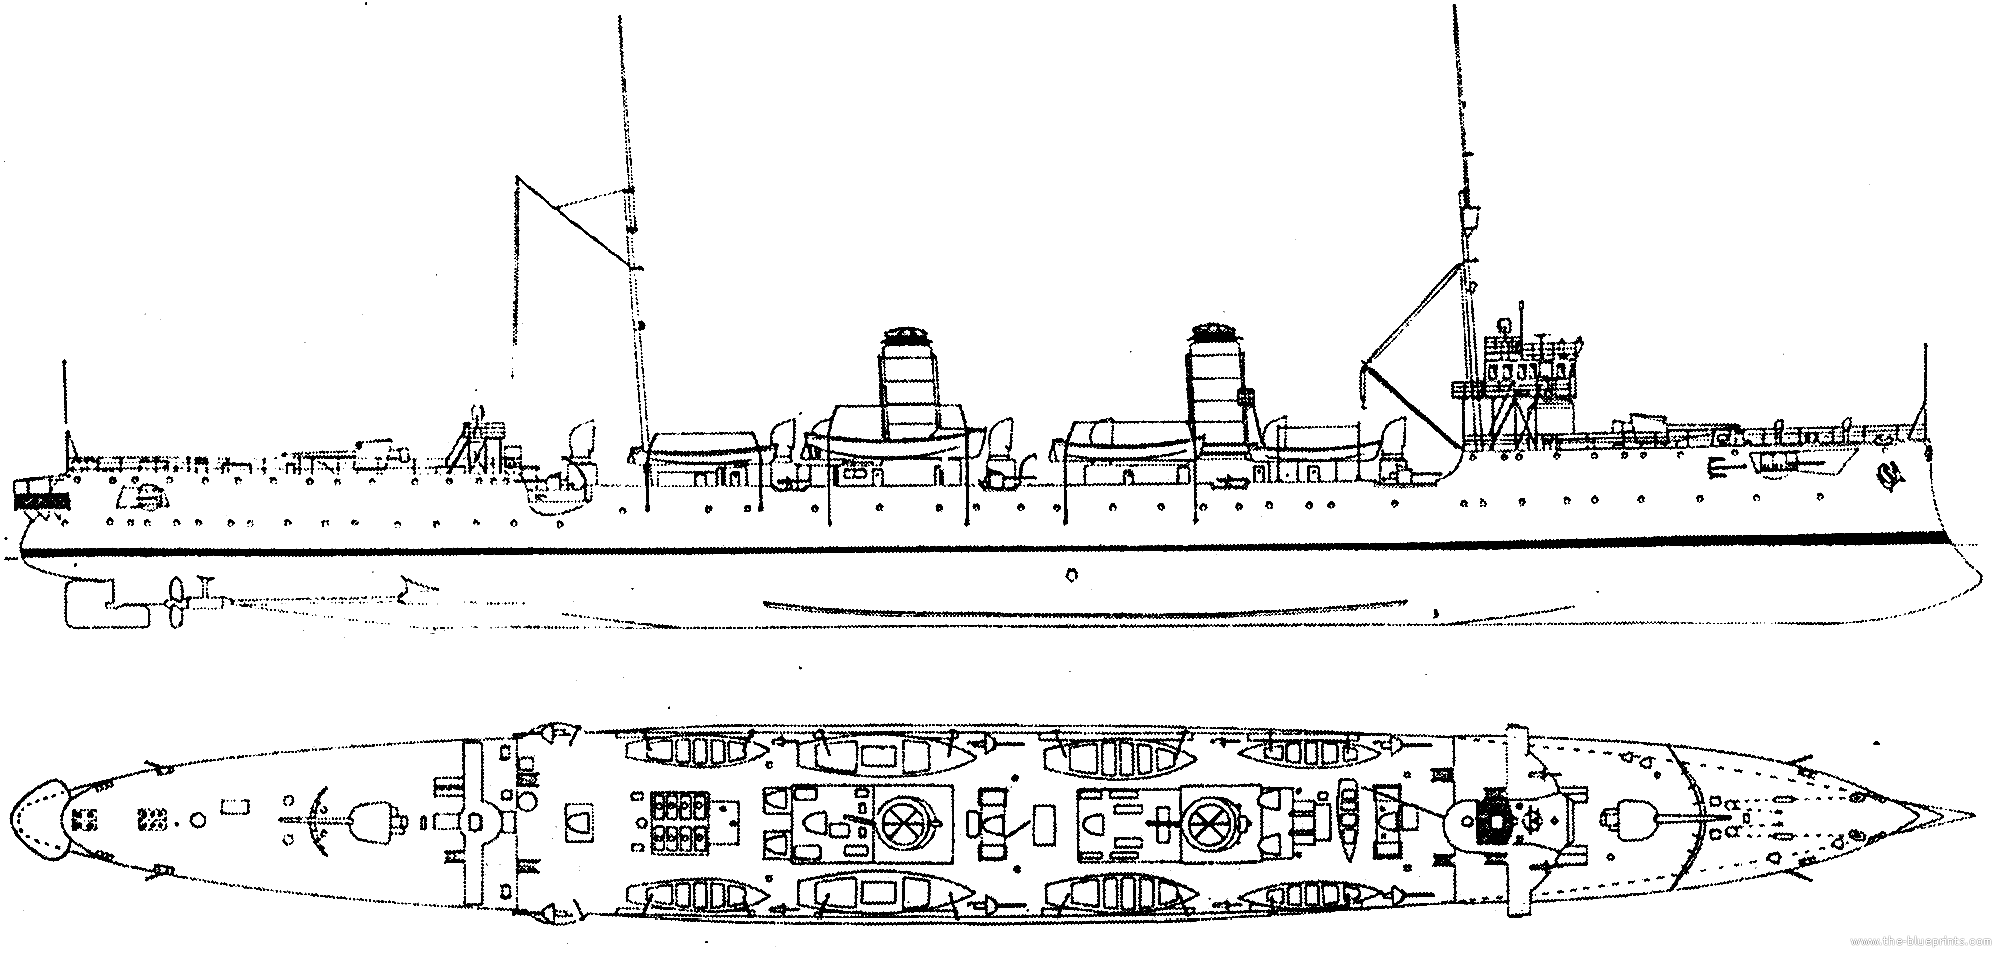 bap-almirante-grau-1907-scout-cruiser--peru.png